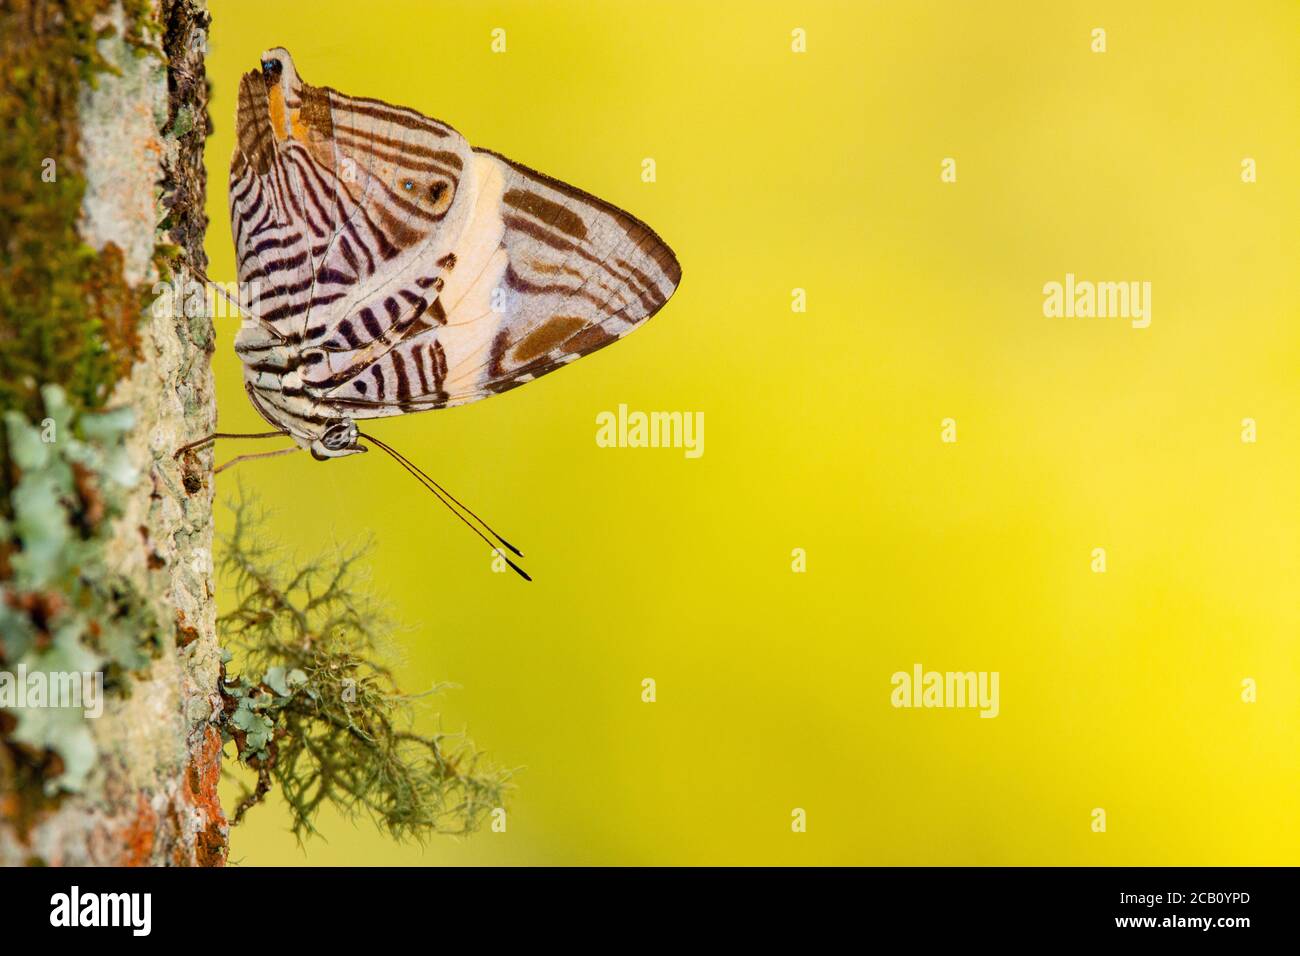 Dirce beauty, Mosaico o cebra Mosaico (Colobura dirce), es una mariposa de la familia Nymphalidae. Icononzo, Tolima, Colombia Foto de stock